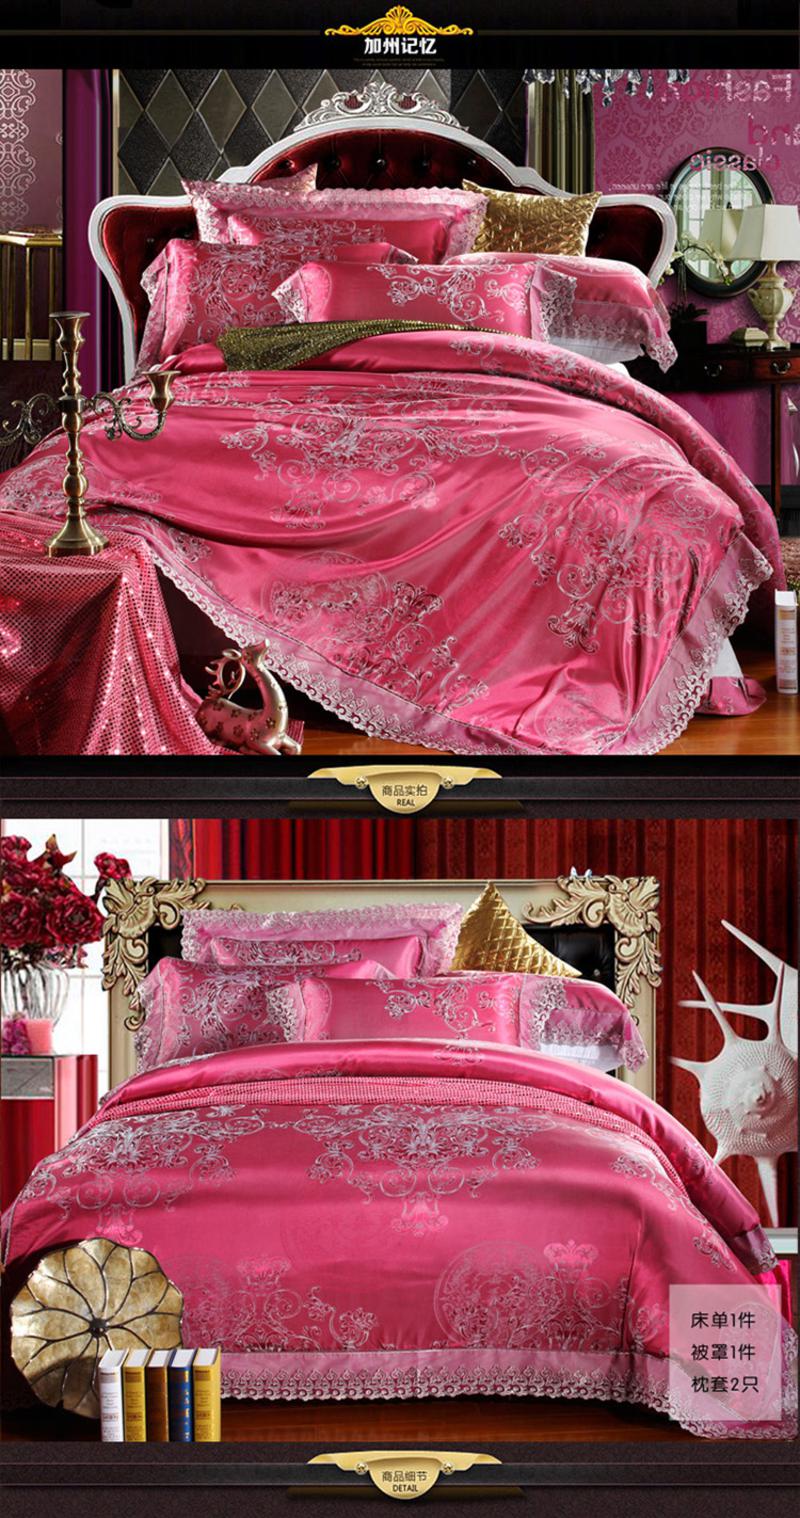 么小毛家纺床上用品欧式经典莫代尔全棉大提花床品套件床单式婚庆四件套1.8米床